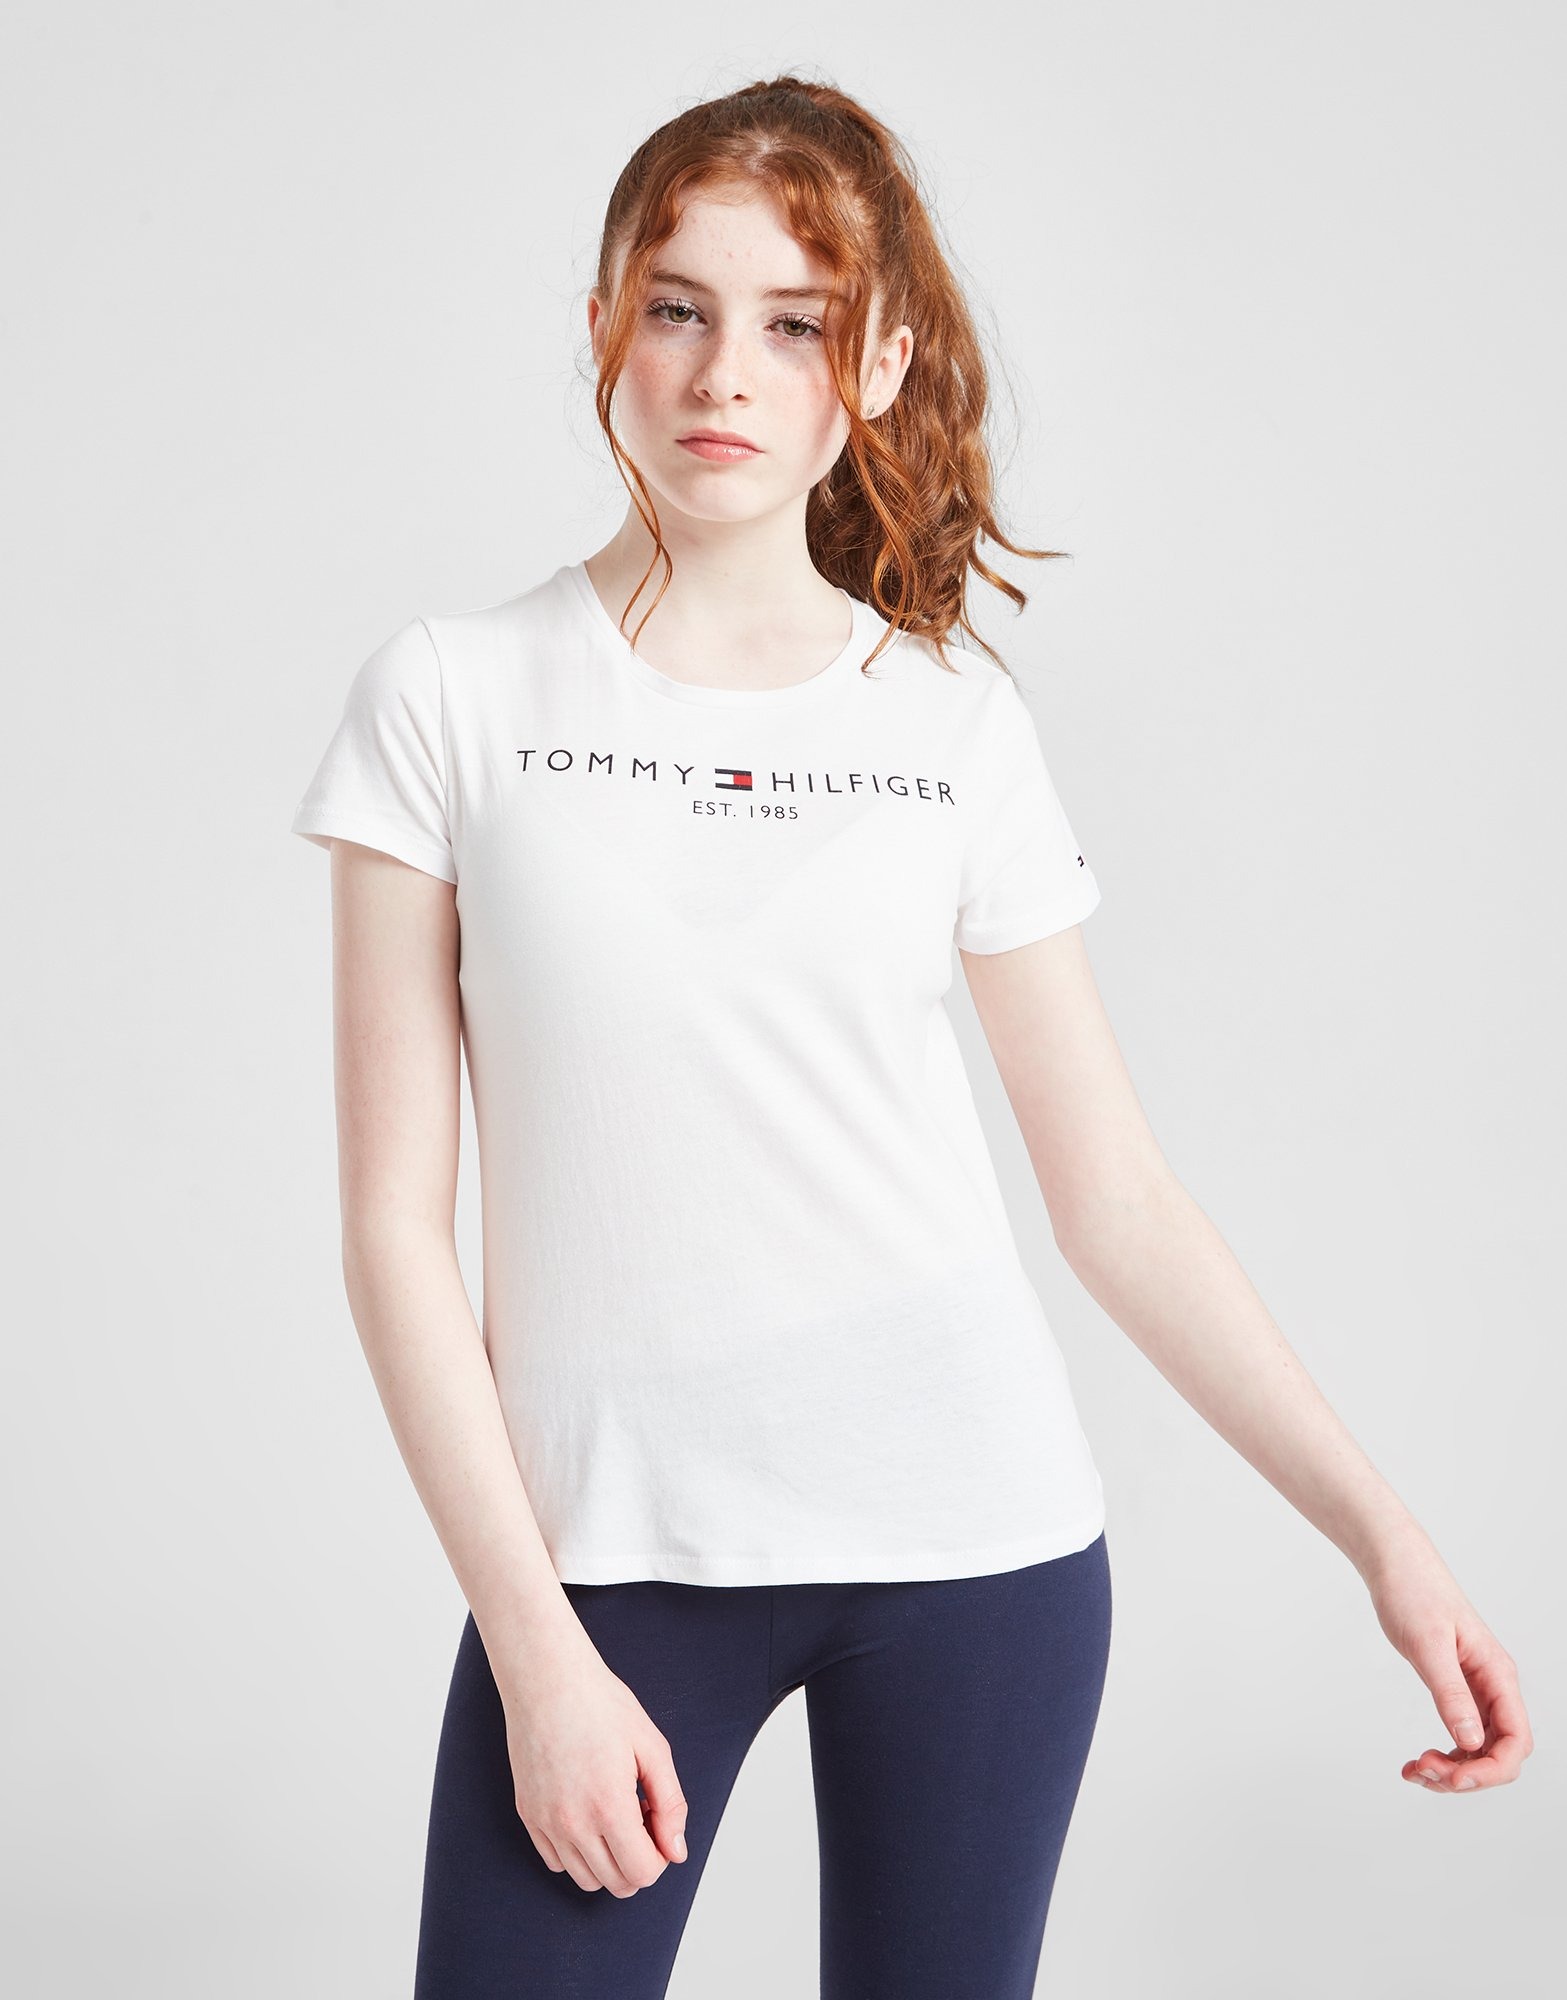 Tommy Hilfiger Girls\' Essential T-Shirt Kinder Weiss - JD Sports Deutschland